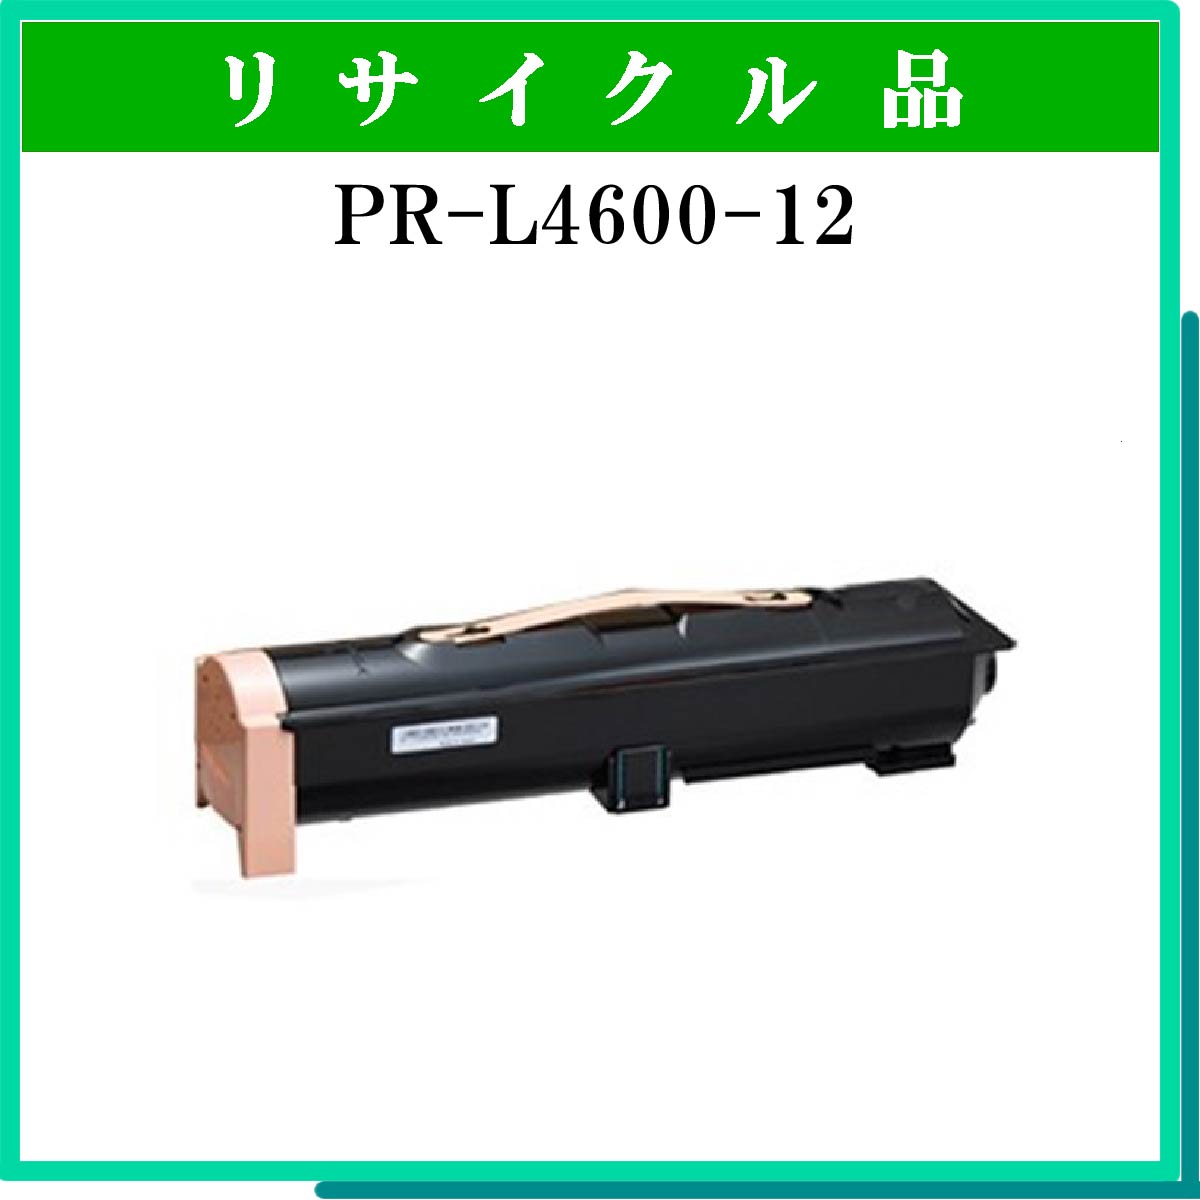 PR-L4600-12